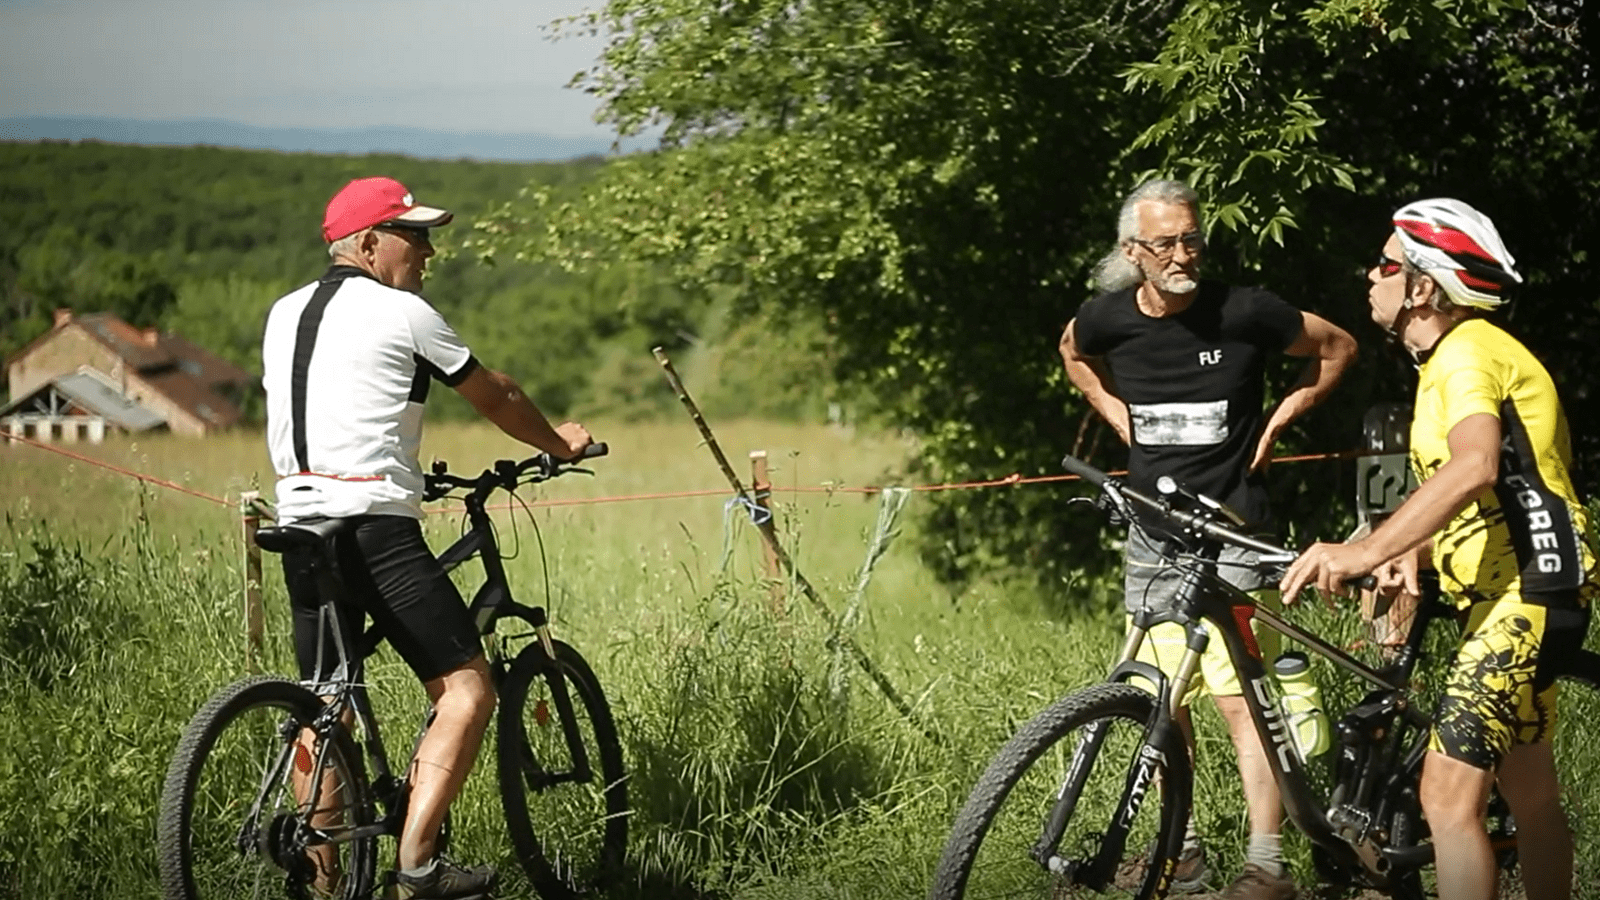 6 days cycling in the Charolais-Brionnais region